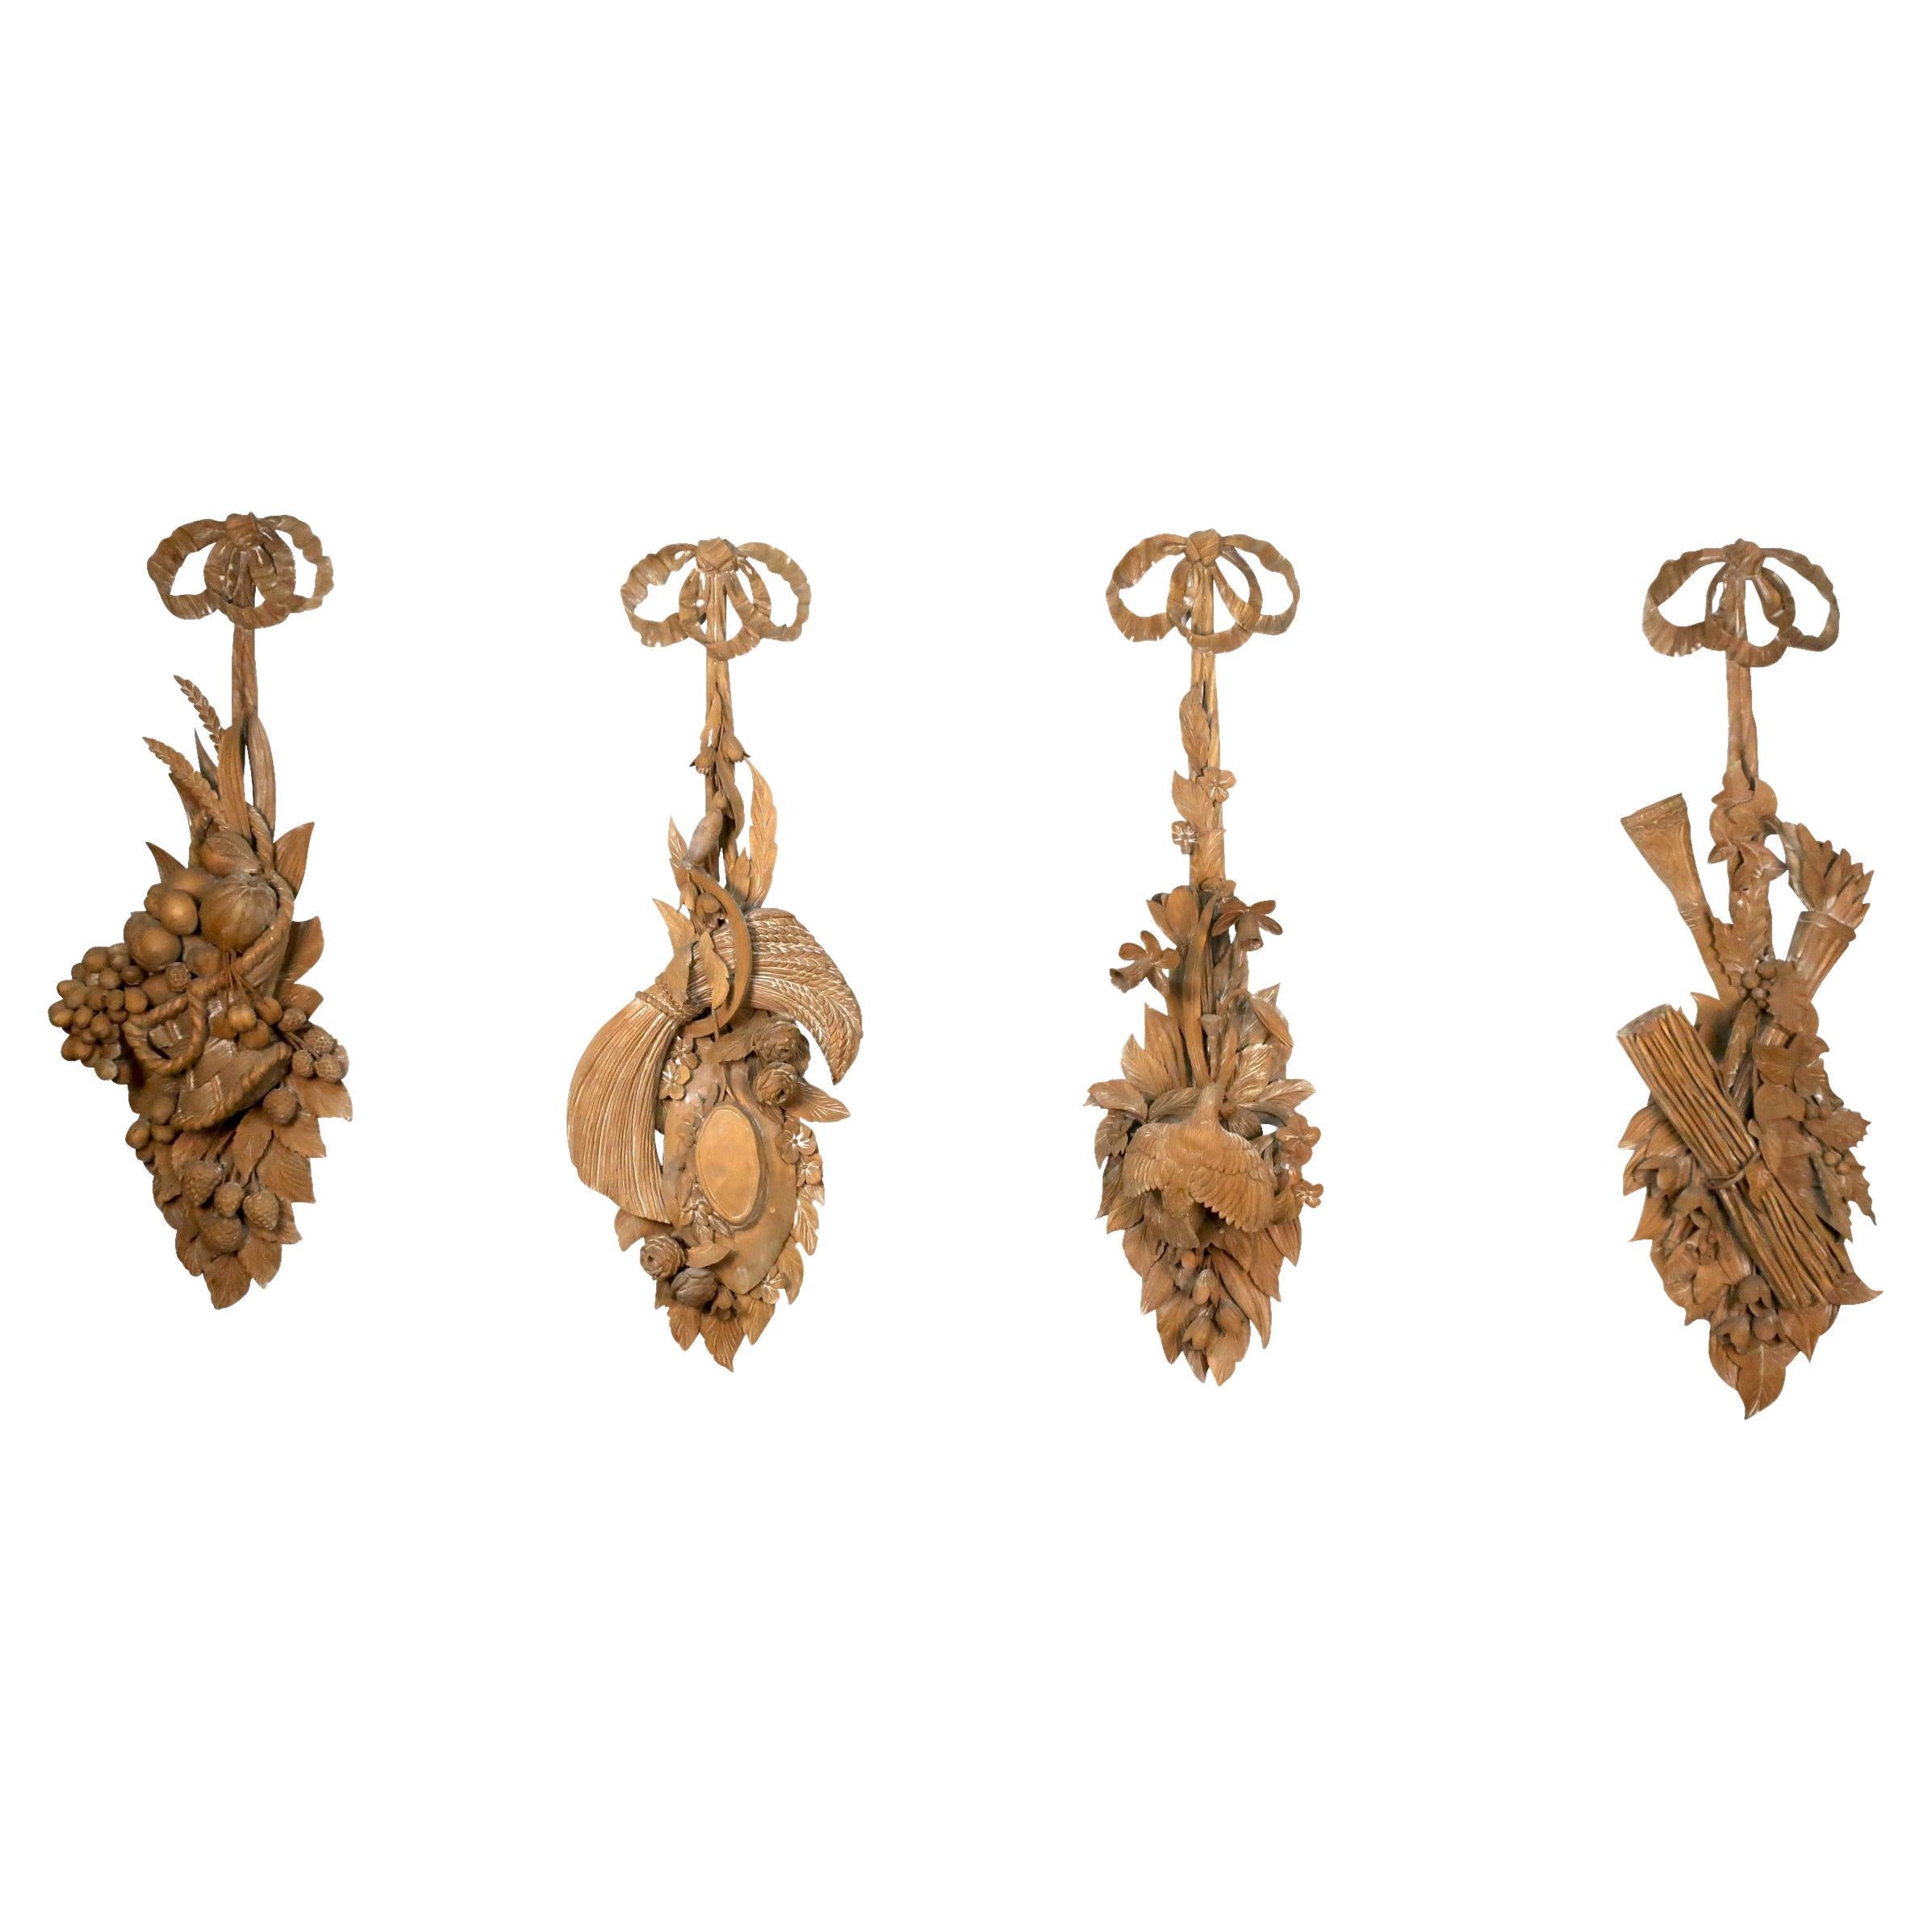 Quatre panneaux en bois sculptés continentaux des « Quatre saisons » avec cintres en forme de ruban